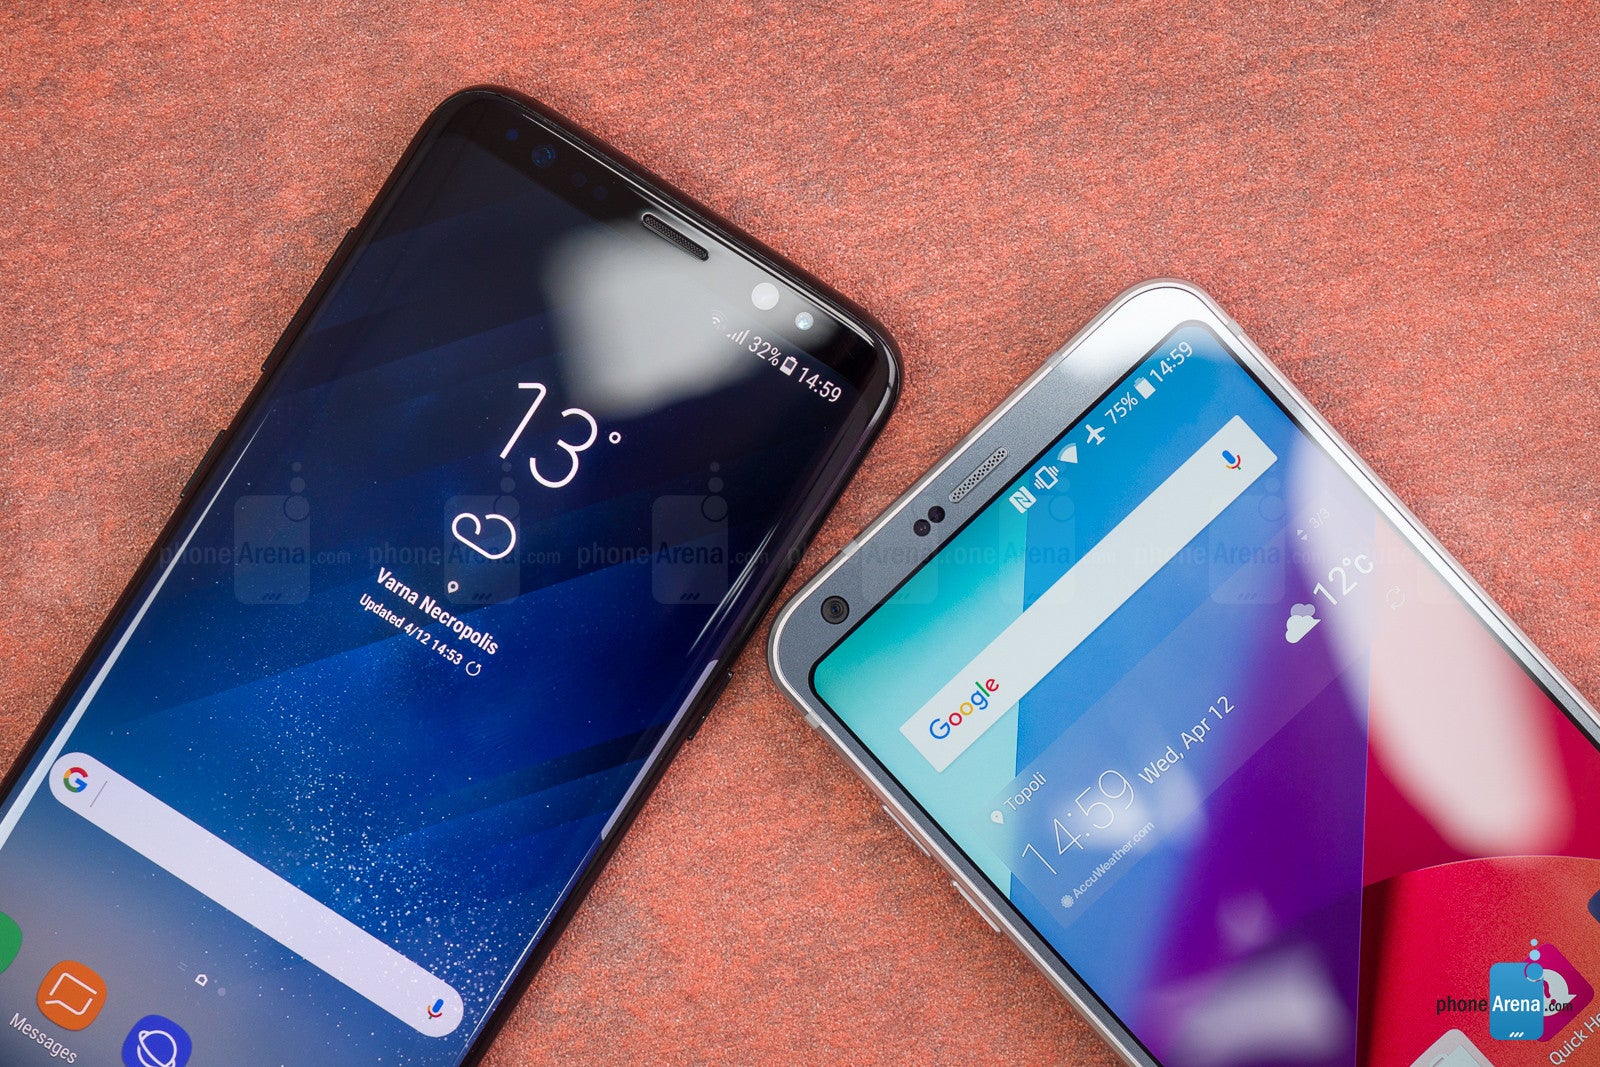 Samsung Galaxy S8 vs LG G6